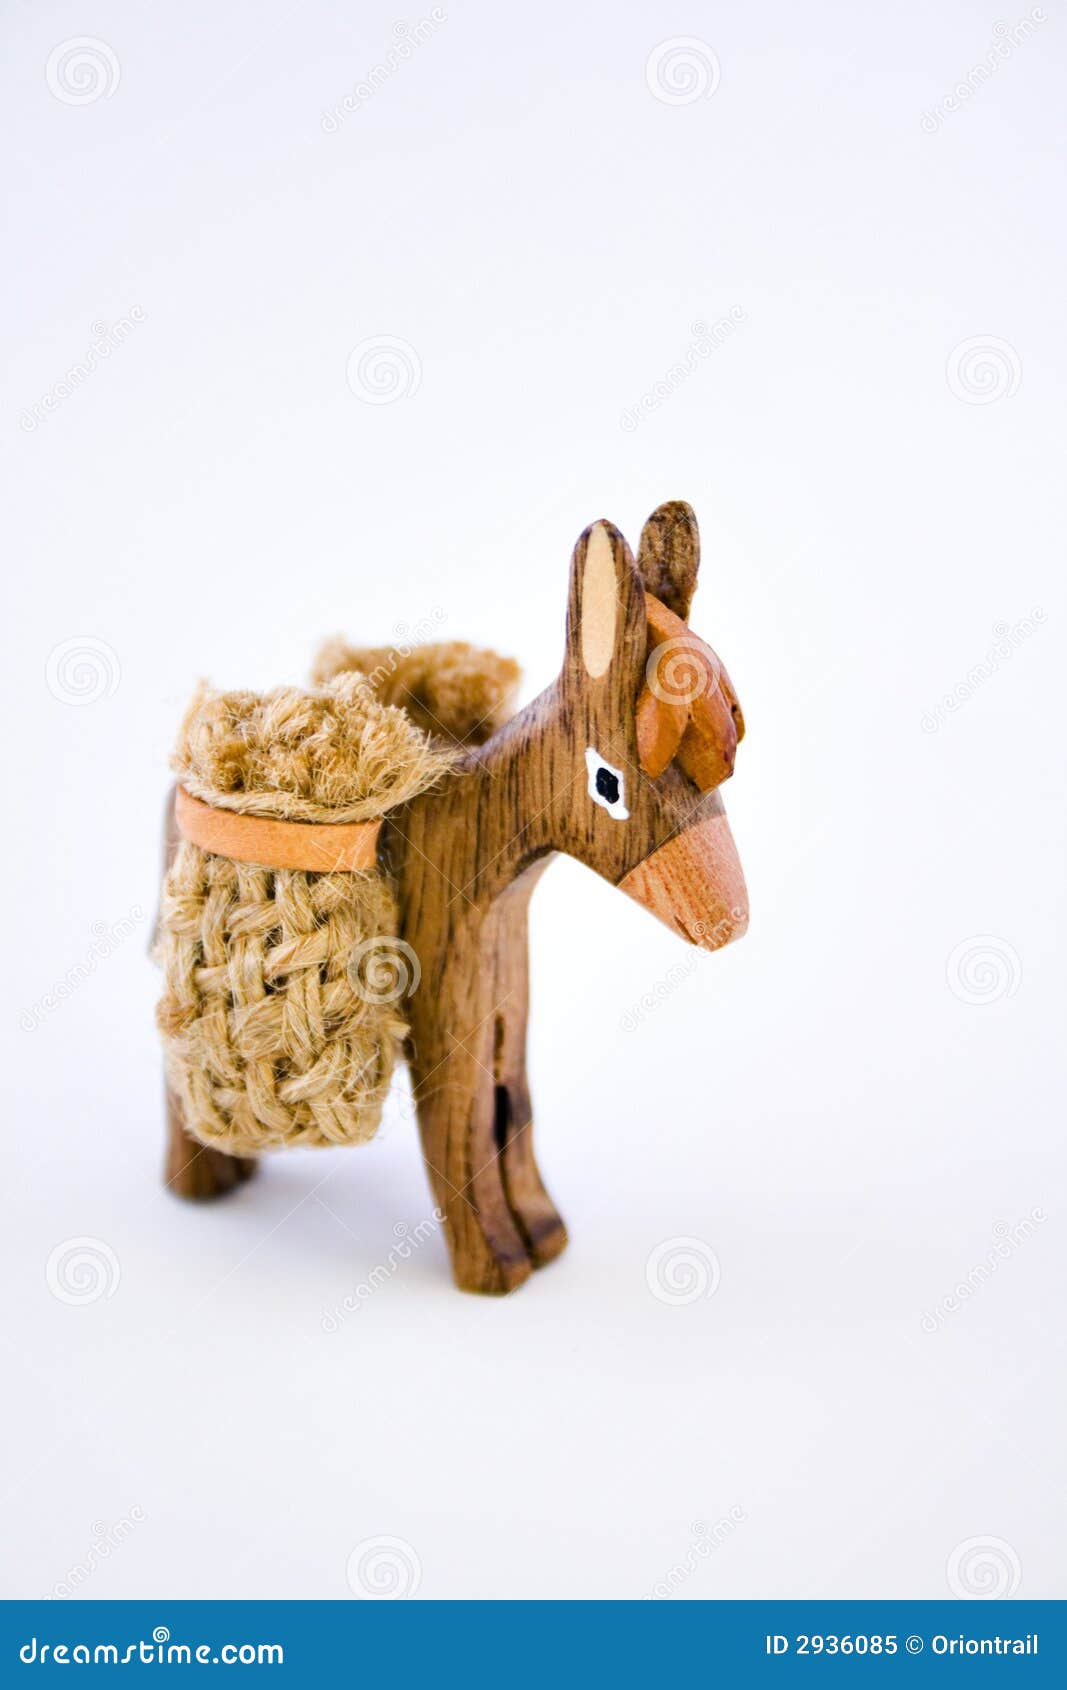 wooden donkey souvenir